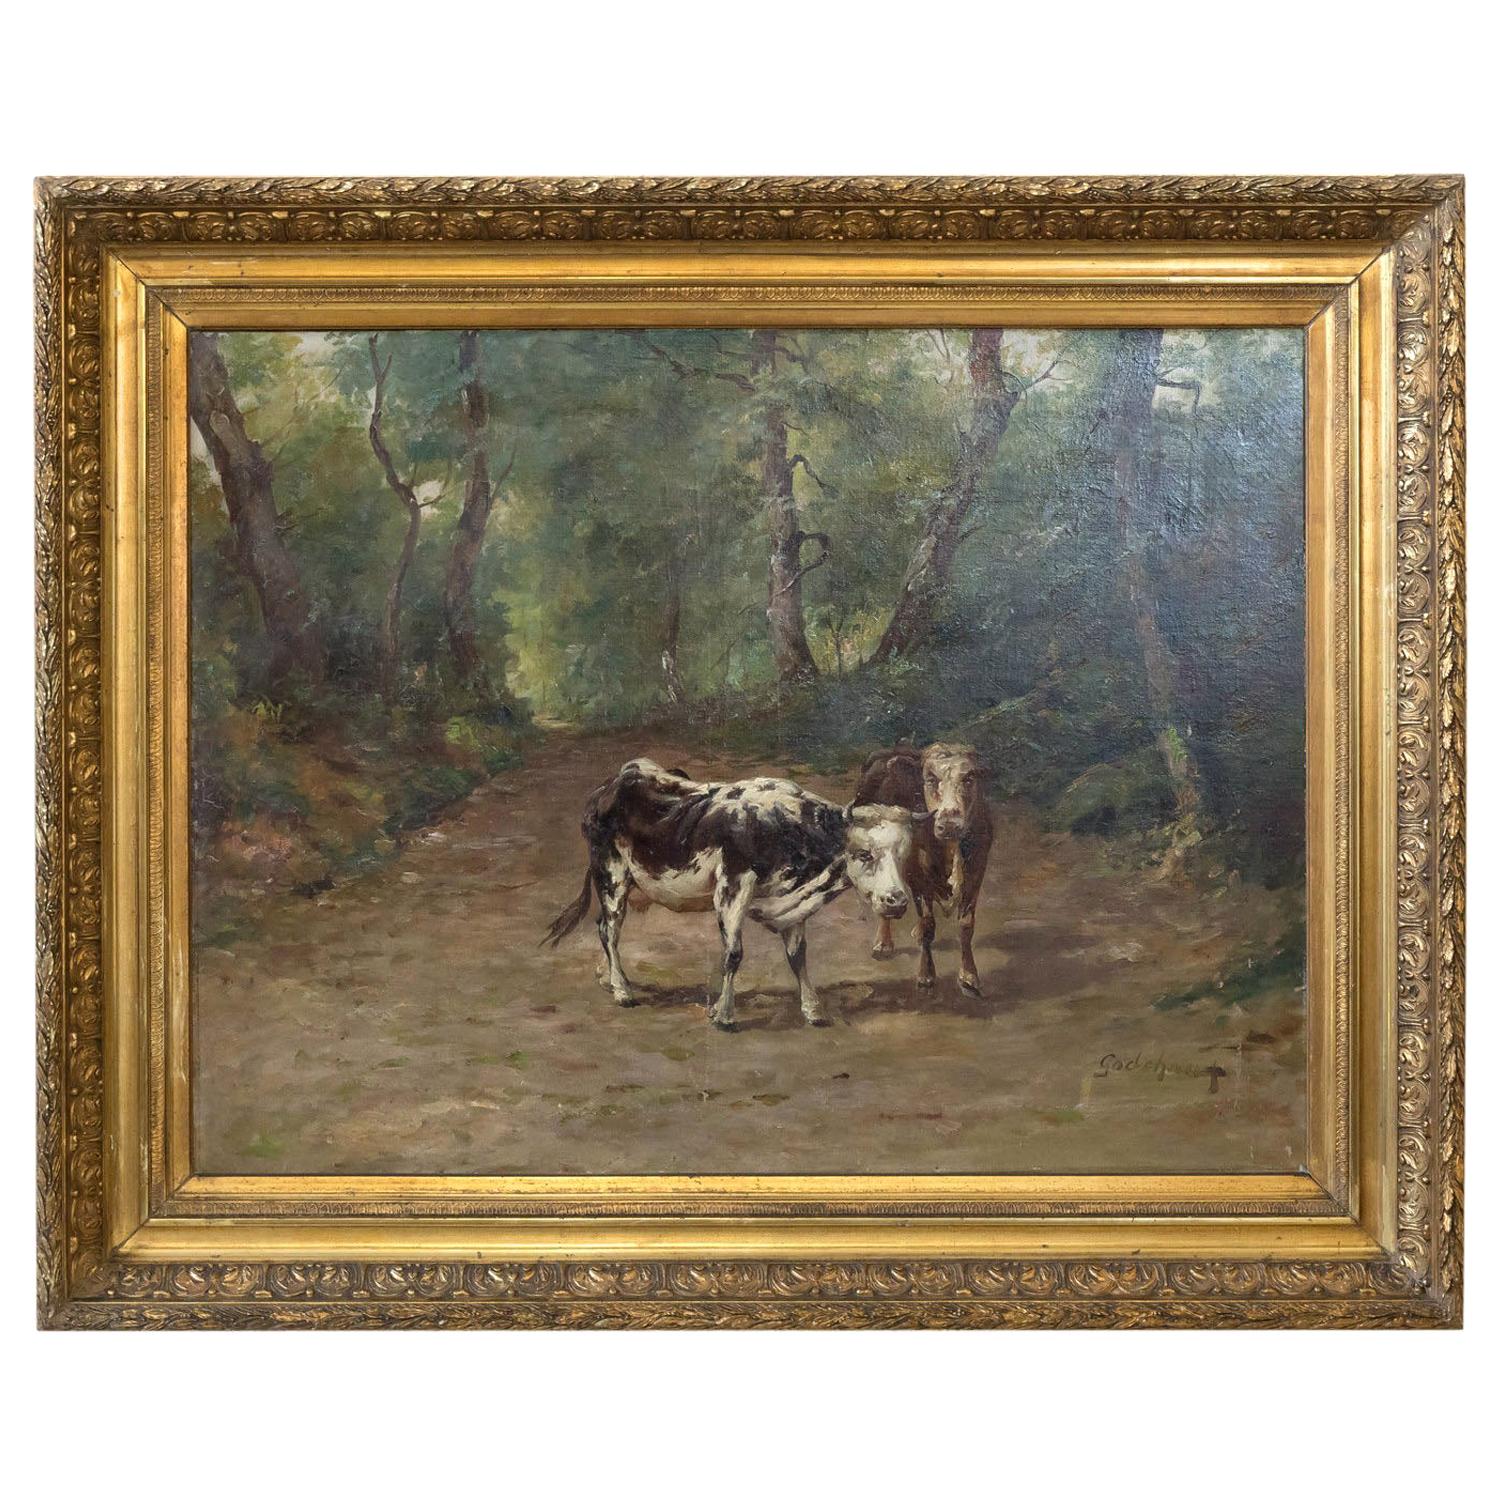 Französisches Gemälde von Kühen auf einem Waldweg aus dem 19. Jahrhundert von Emile Godchaux, signiert